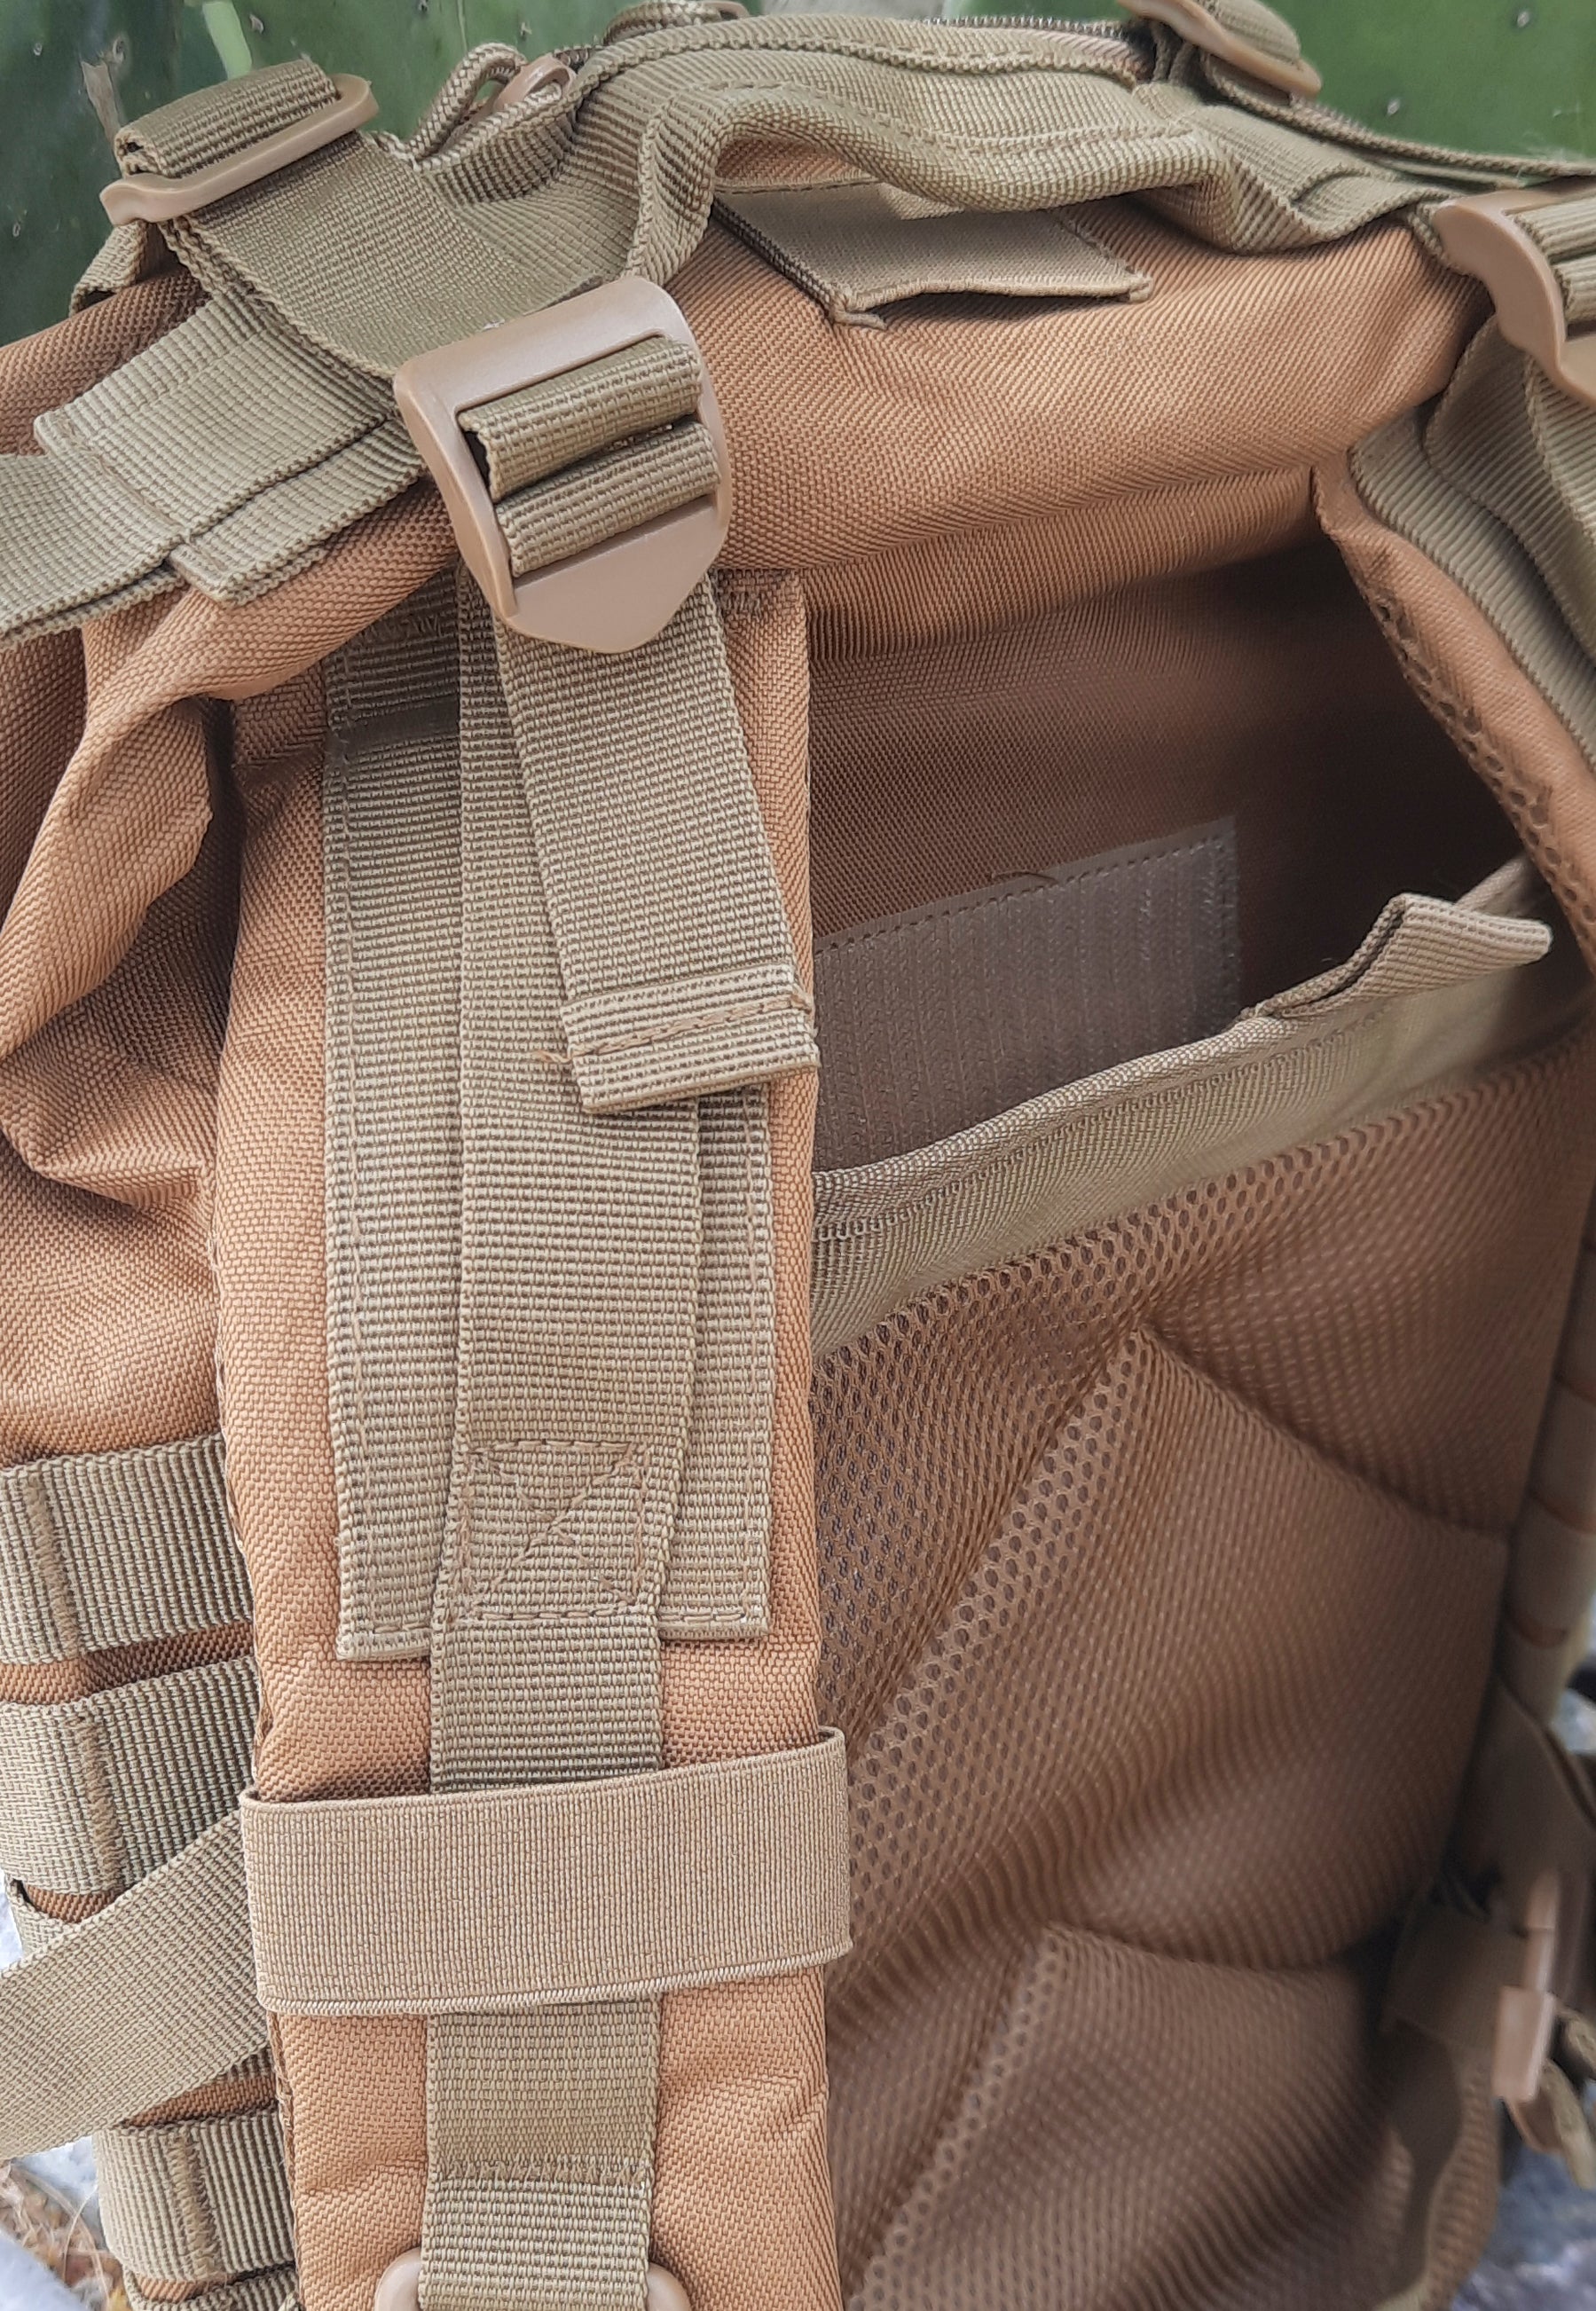 plate carrier pocket on armed af backpack